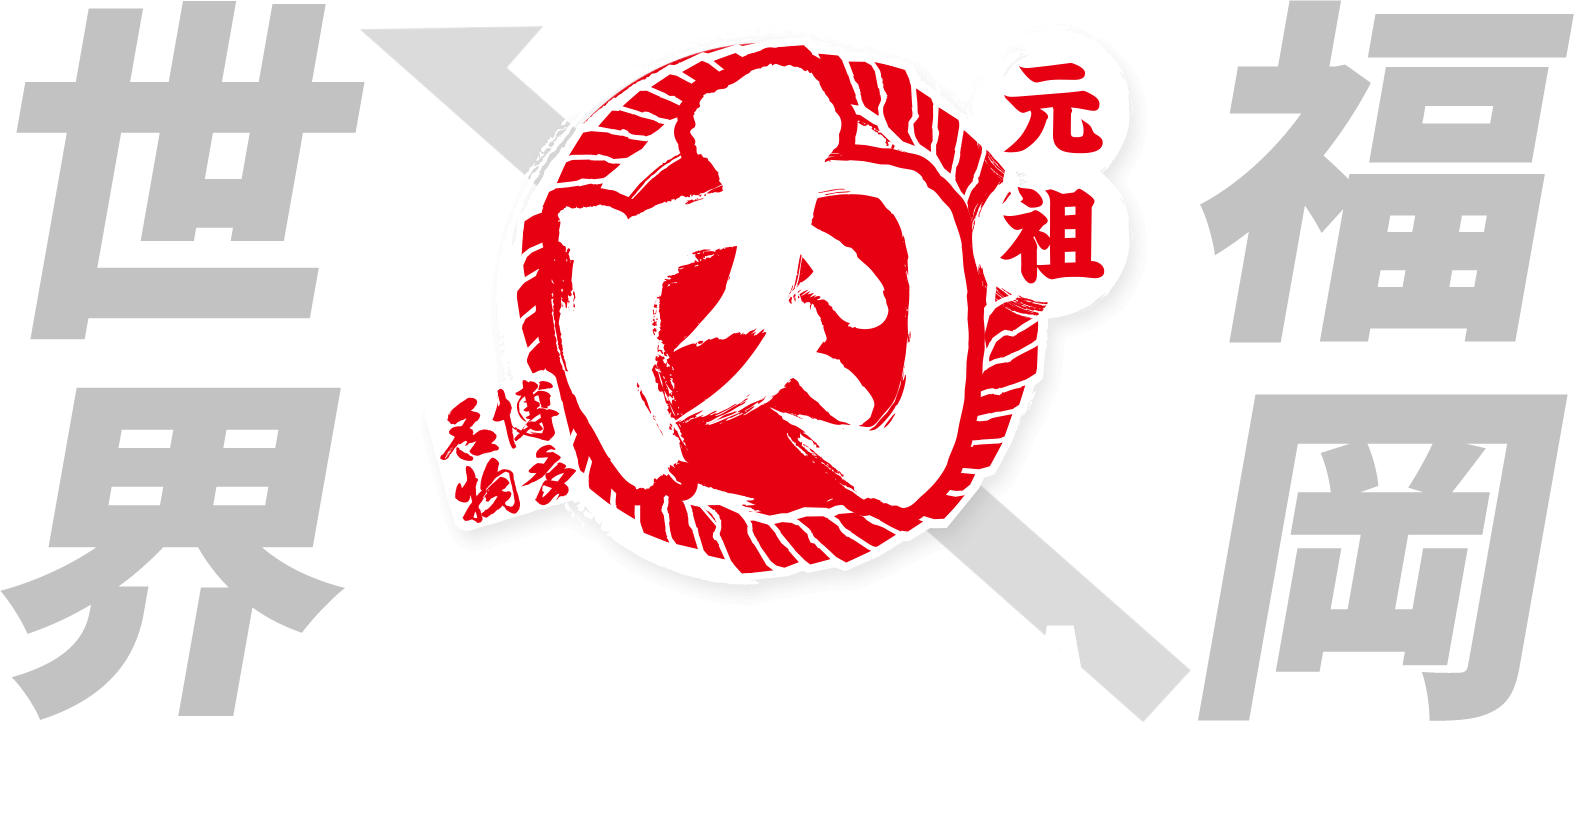 FROM FUKUOKA TO THE WORLD